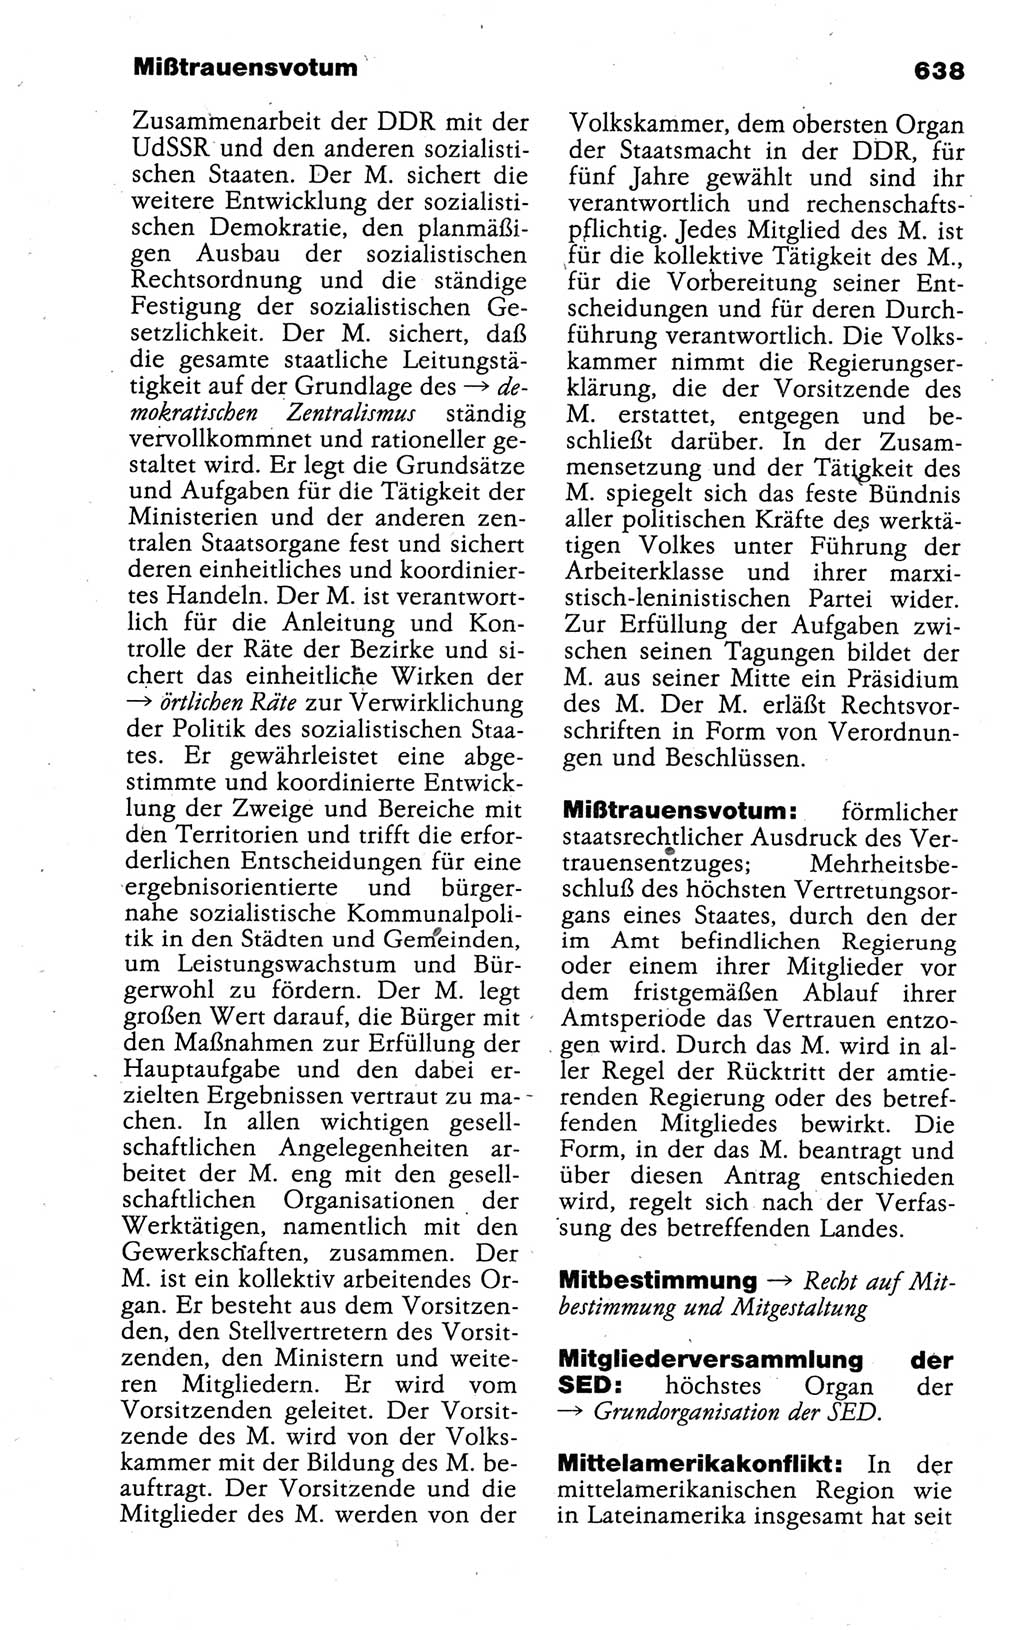 Kleines politisches Wörterbuch [Deutsche Demokratische Republik (DDR)] 1988, Seite 638 (Kl. pol. Wb. DDR 1988, S. 638)